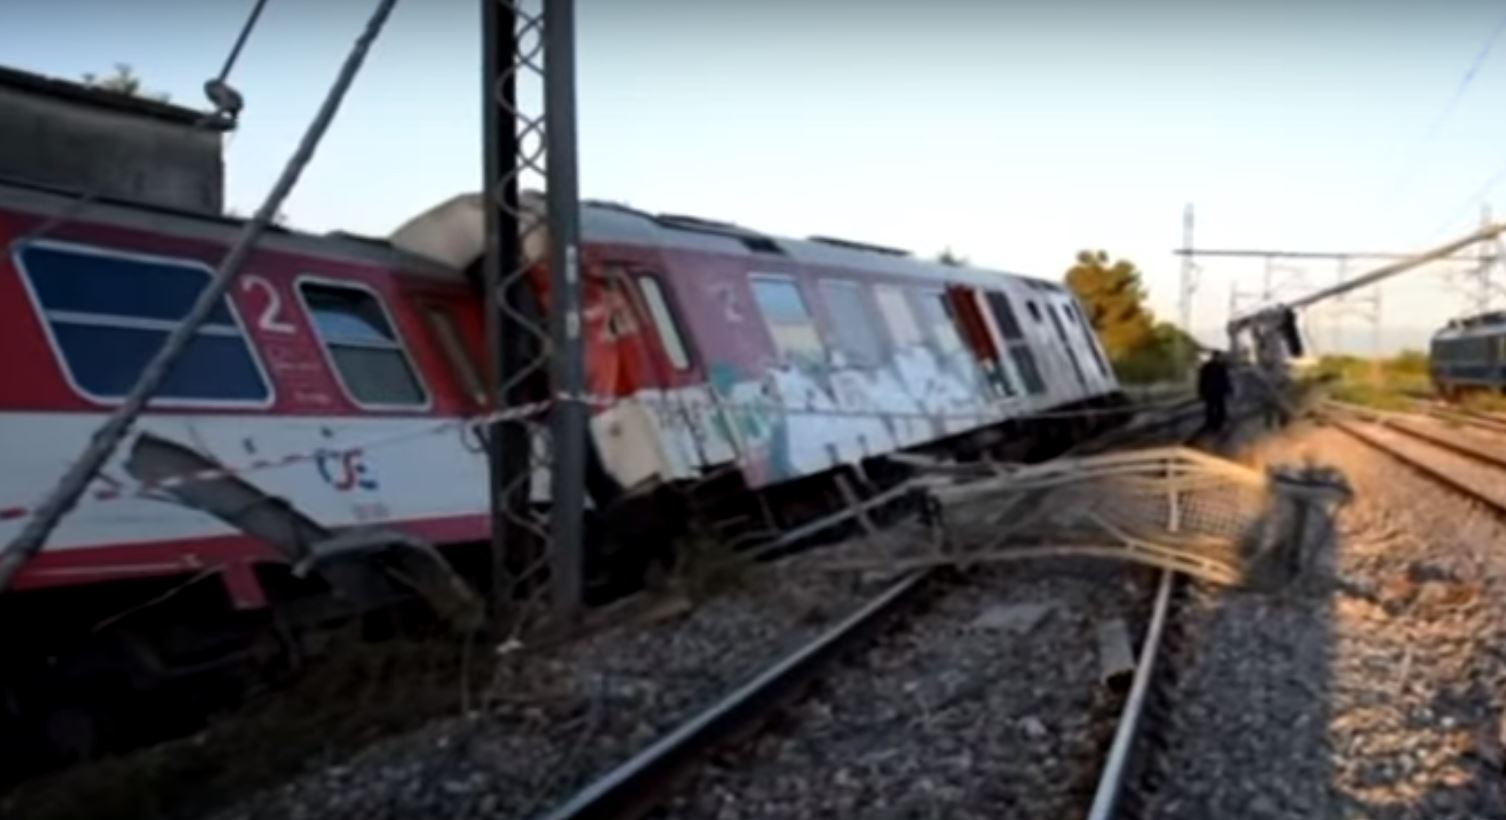 L'accident pourrait avoir été provoqué par la vitesse excessive du train.